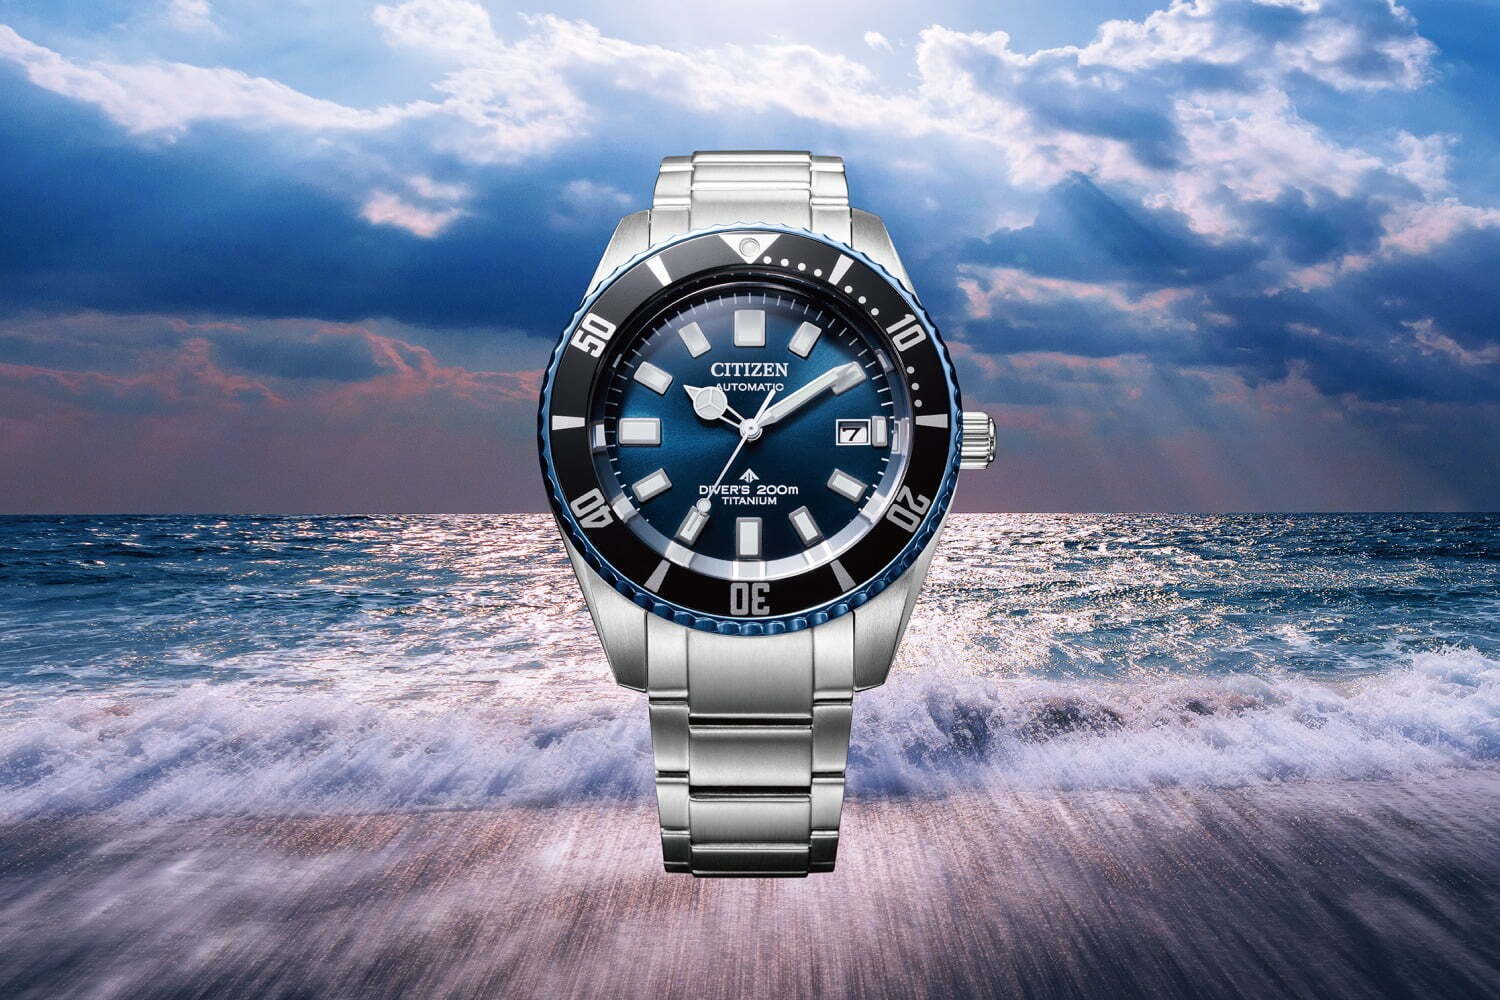 シチズン プロマスターの限定腕時計、きらめく“海”着想ブルーダイヤルのダイバーズウォッチ - ファッションプレス